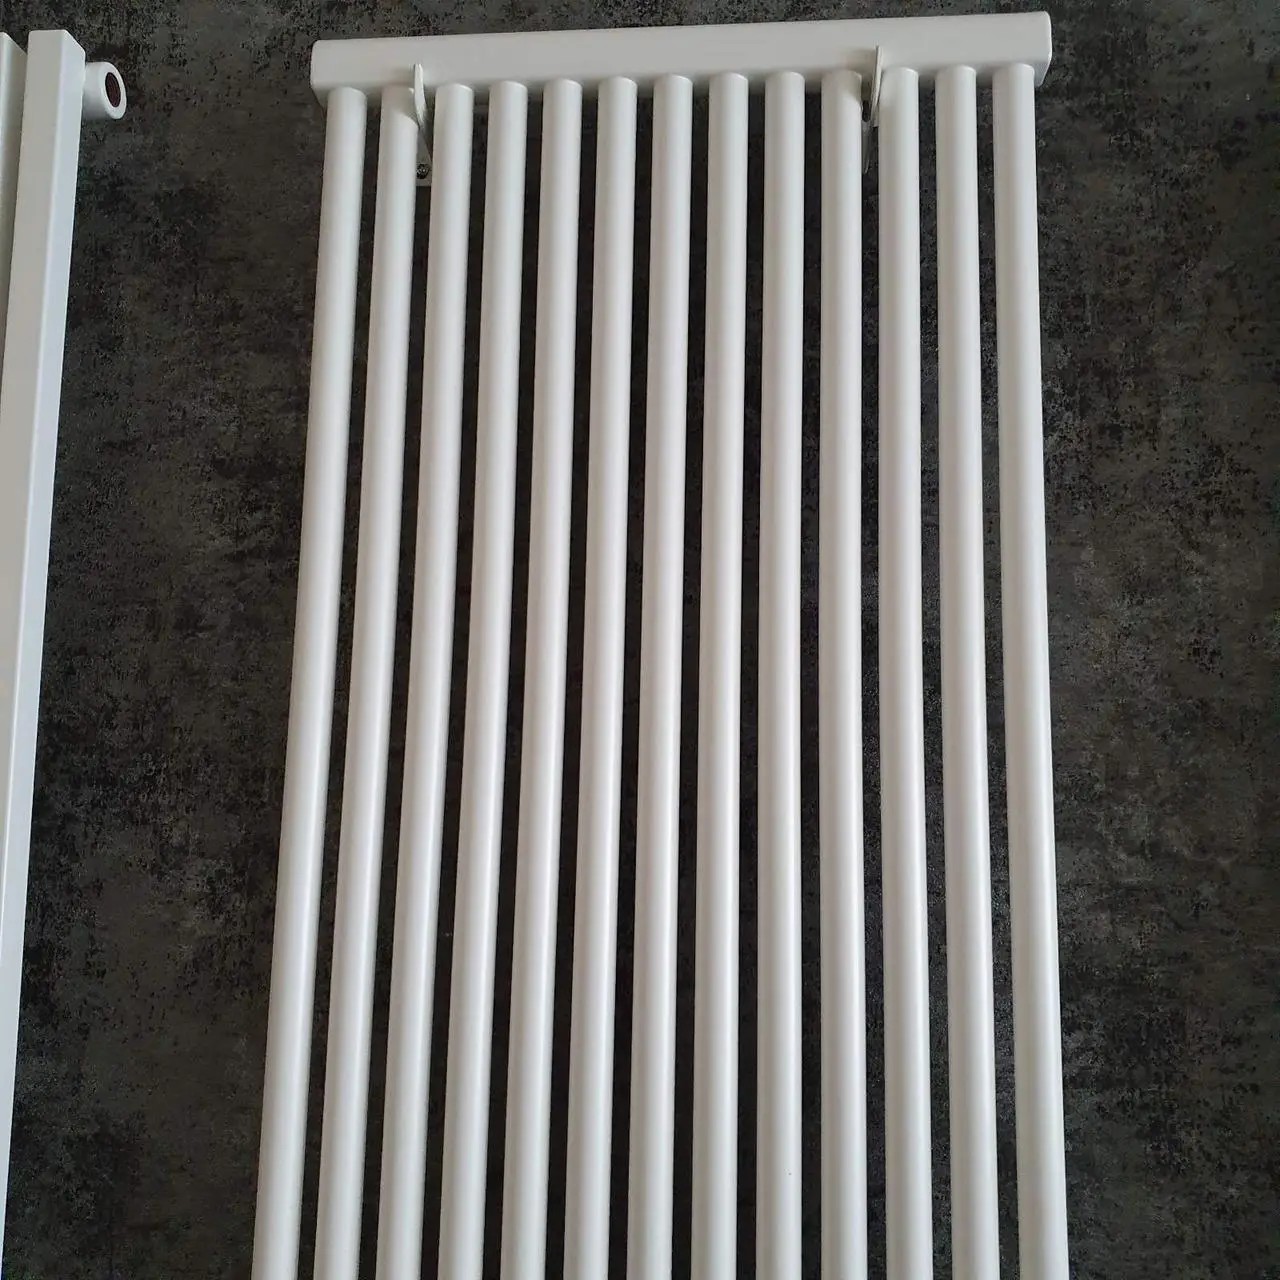 Радиатор для отопления Betatherm PS STYLE 1800мм x 441мм ( PS 1180/12 9016M № 34) отзывы - изображения 5